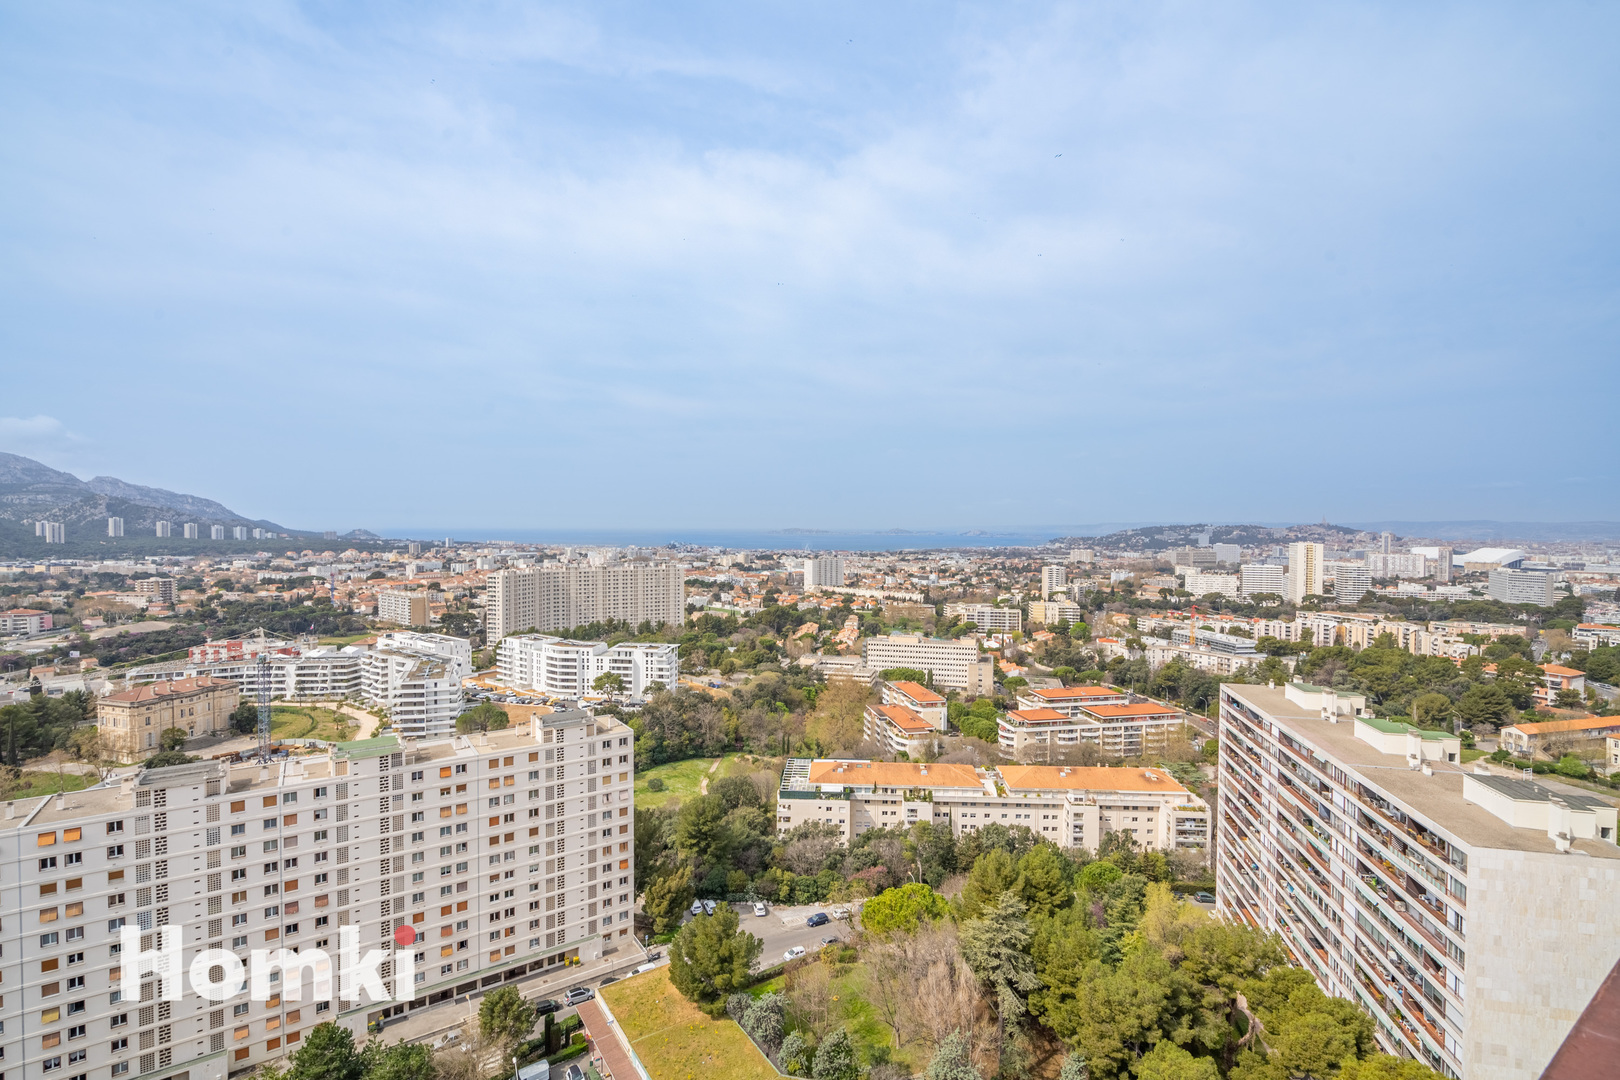 Homki - Vente Appartement  de 40.0 m² à Marseille 13009